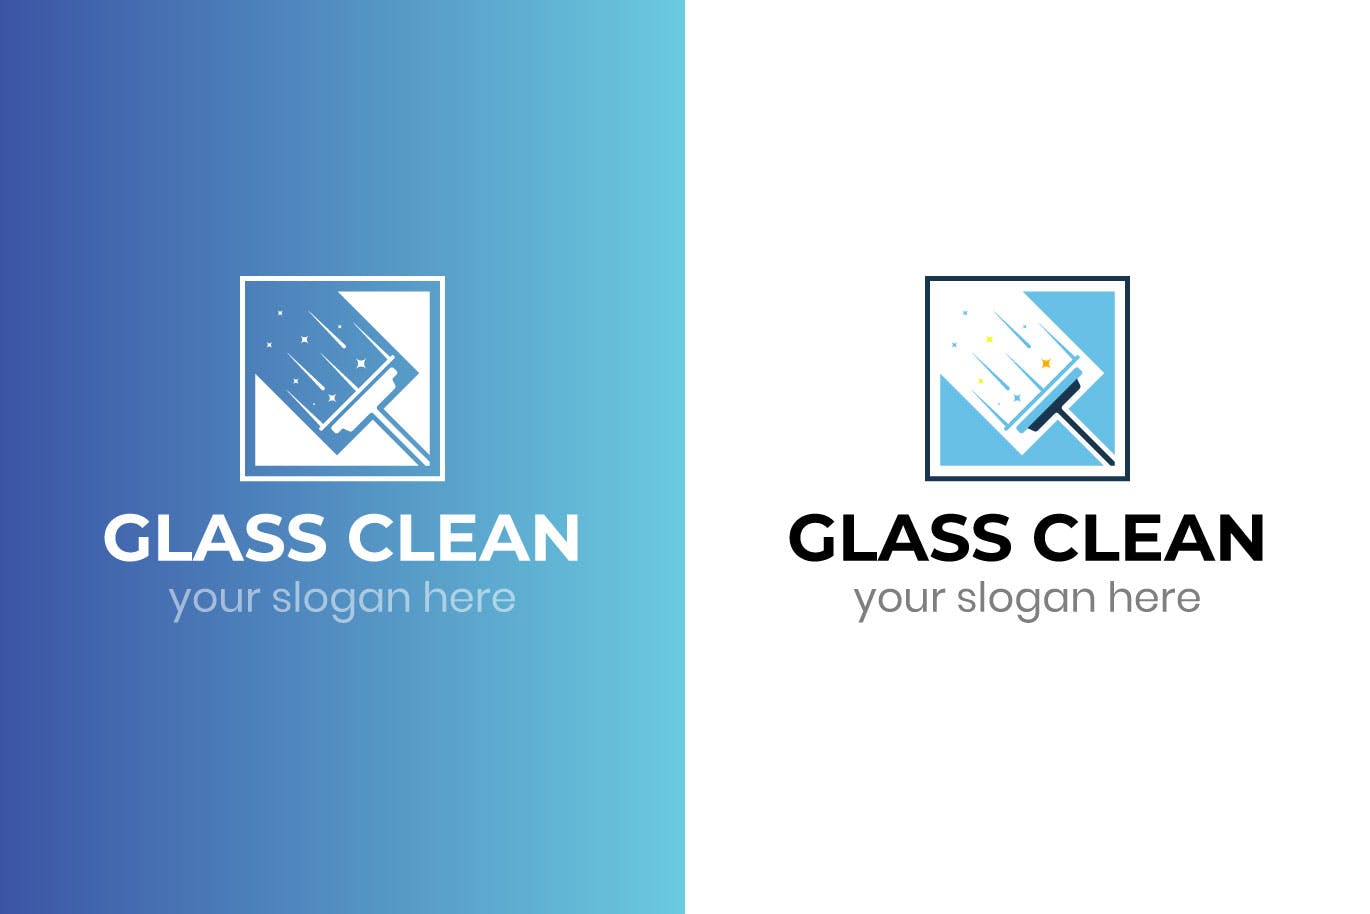 玻璃清洁服务Logo设计第一素材精选模板 Glass Clean Business Logo Template插图(1)